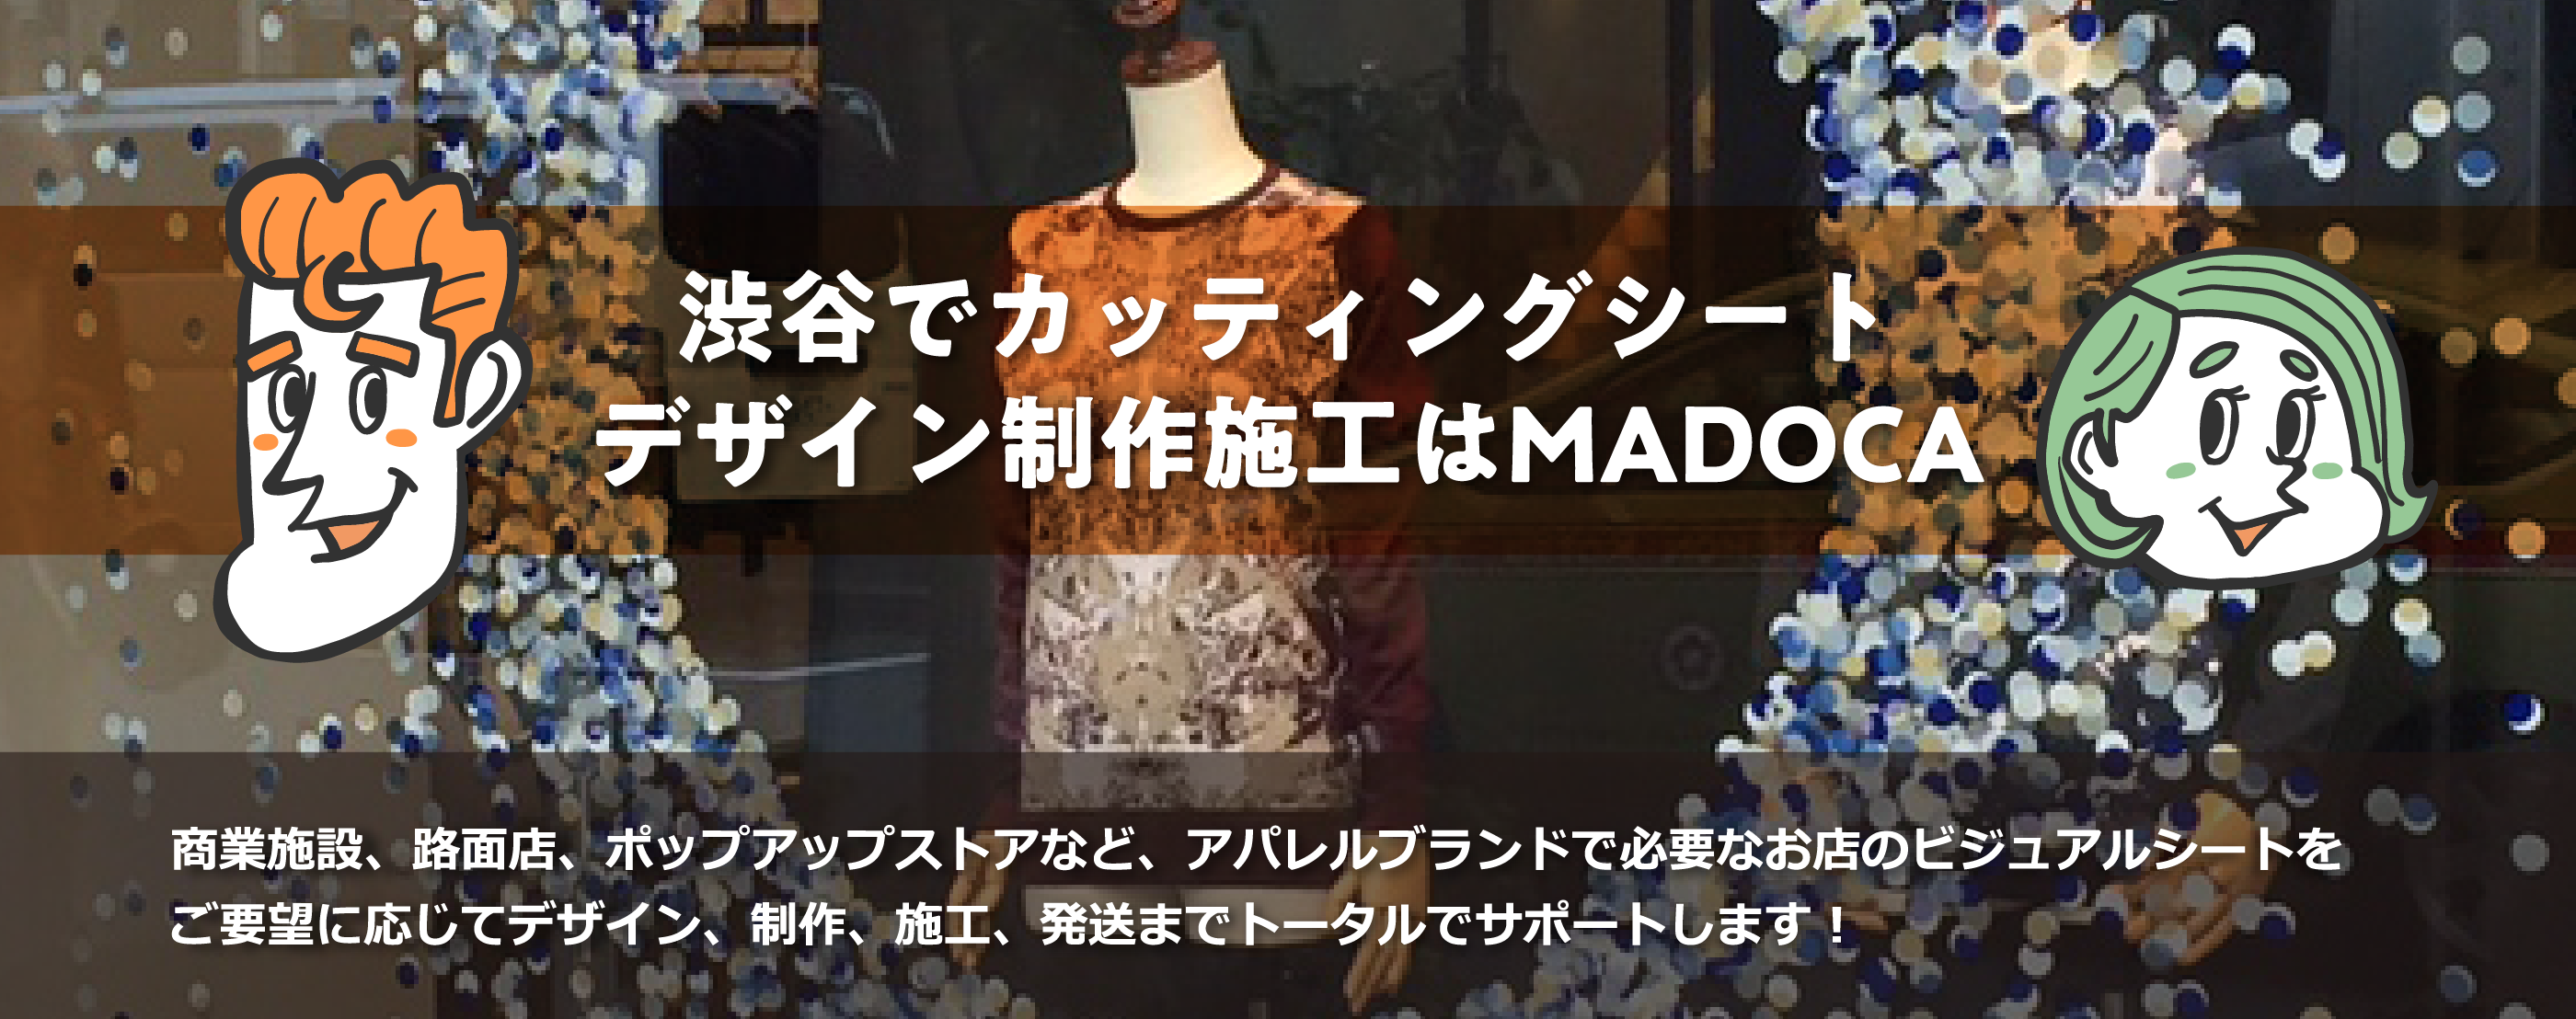 渋谷でカッティングシートデザイン制作施工はMADOCA